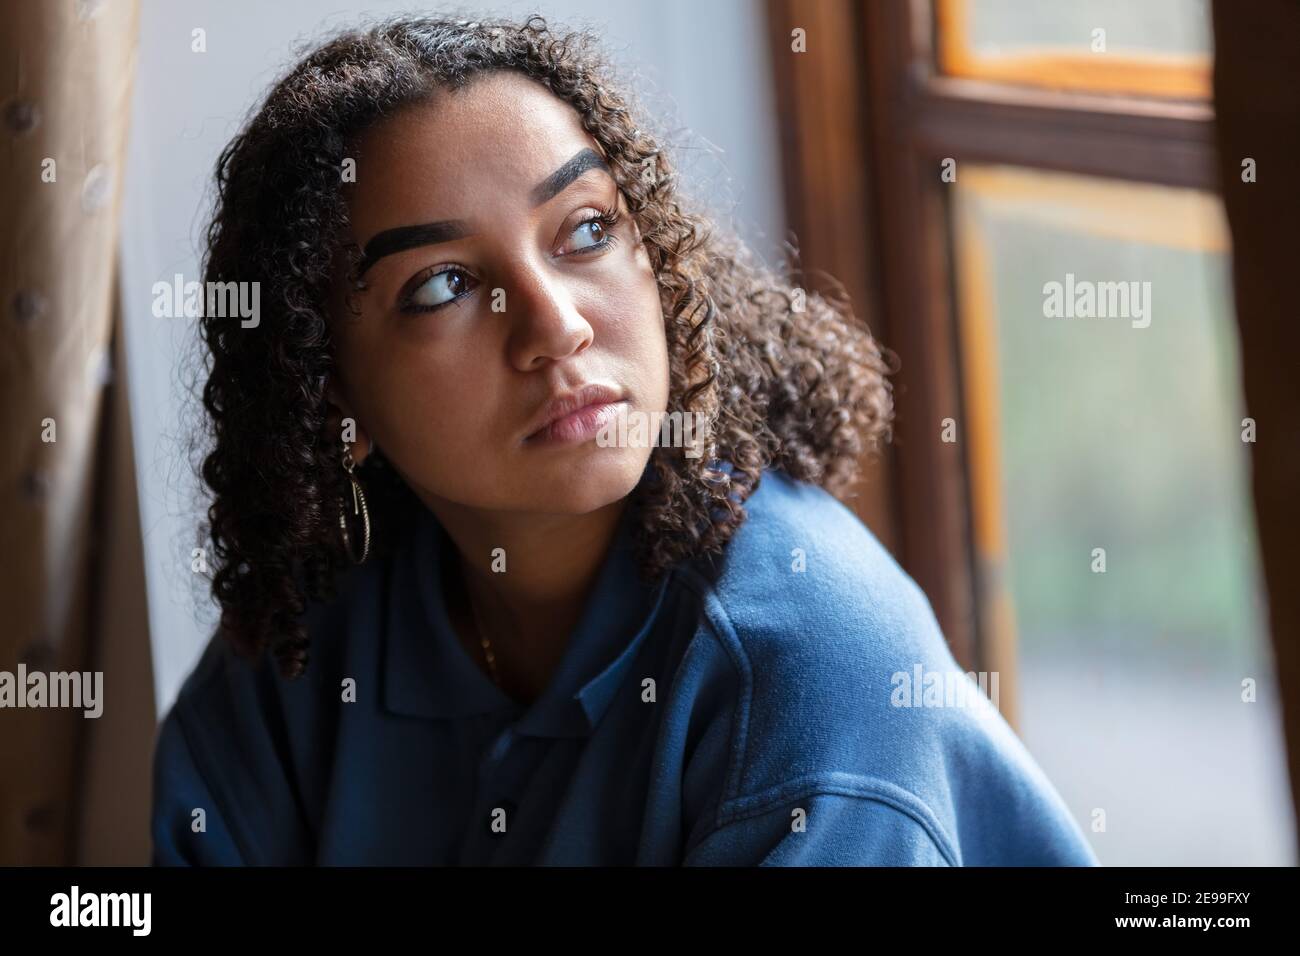 Hermosa raza mixta afroamericana niña adolescente mujer joven triste deprimido o preocupado mirando por una ventana Foto de stock